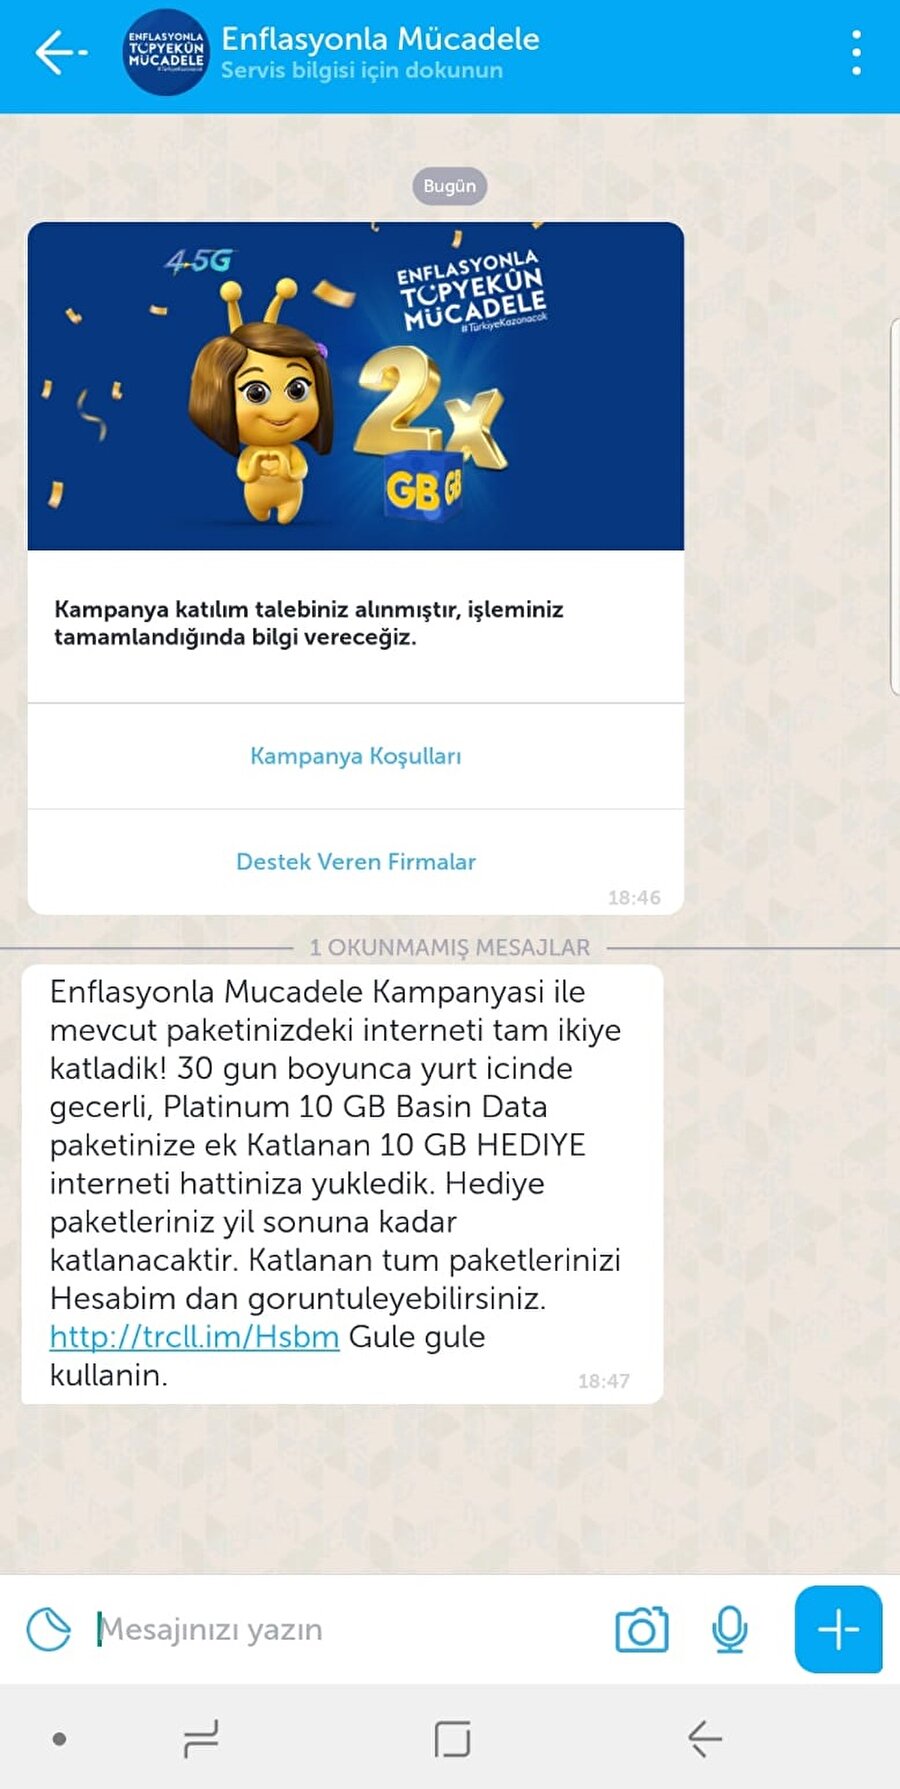 Turkcell, BIP kullanıcılarına 'özel açılan kanal' ve mesaj yoluyla kampanyayı iletti. 